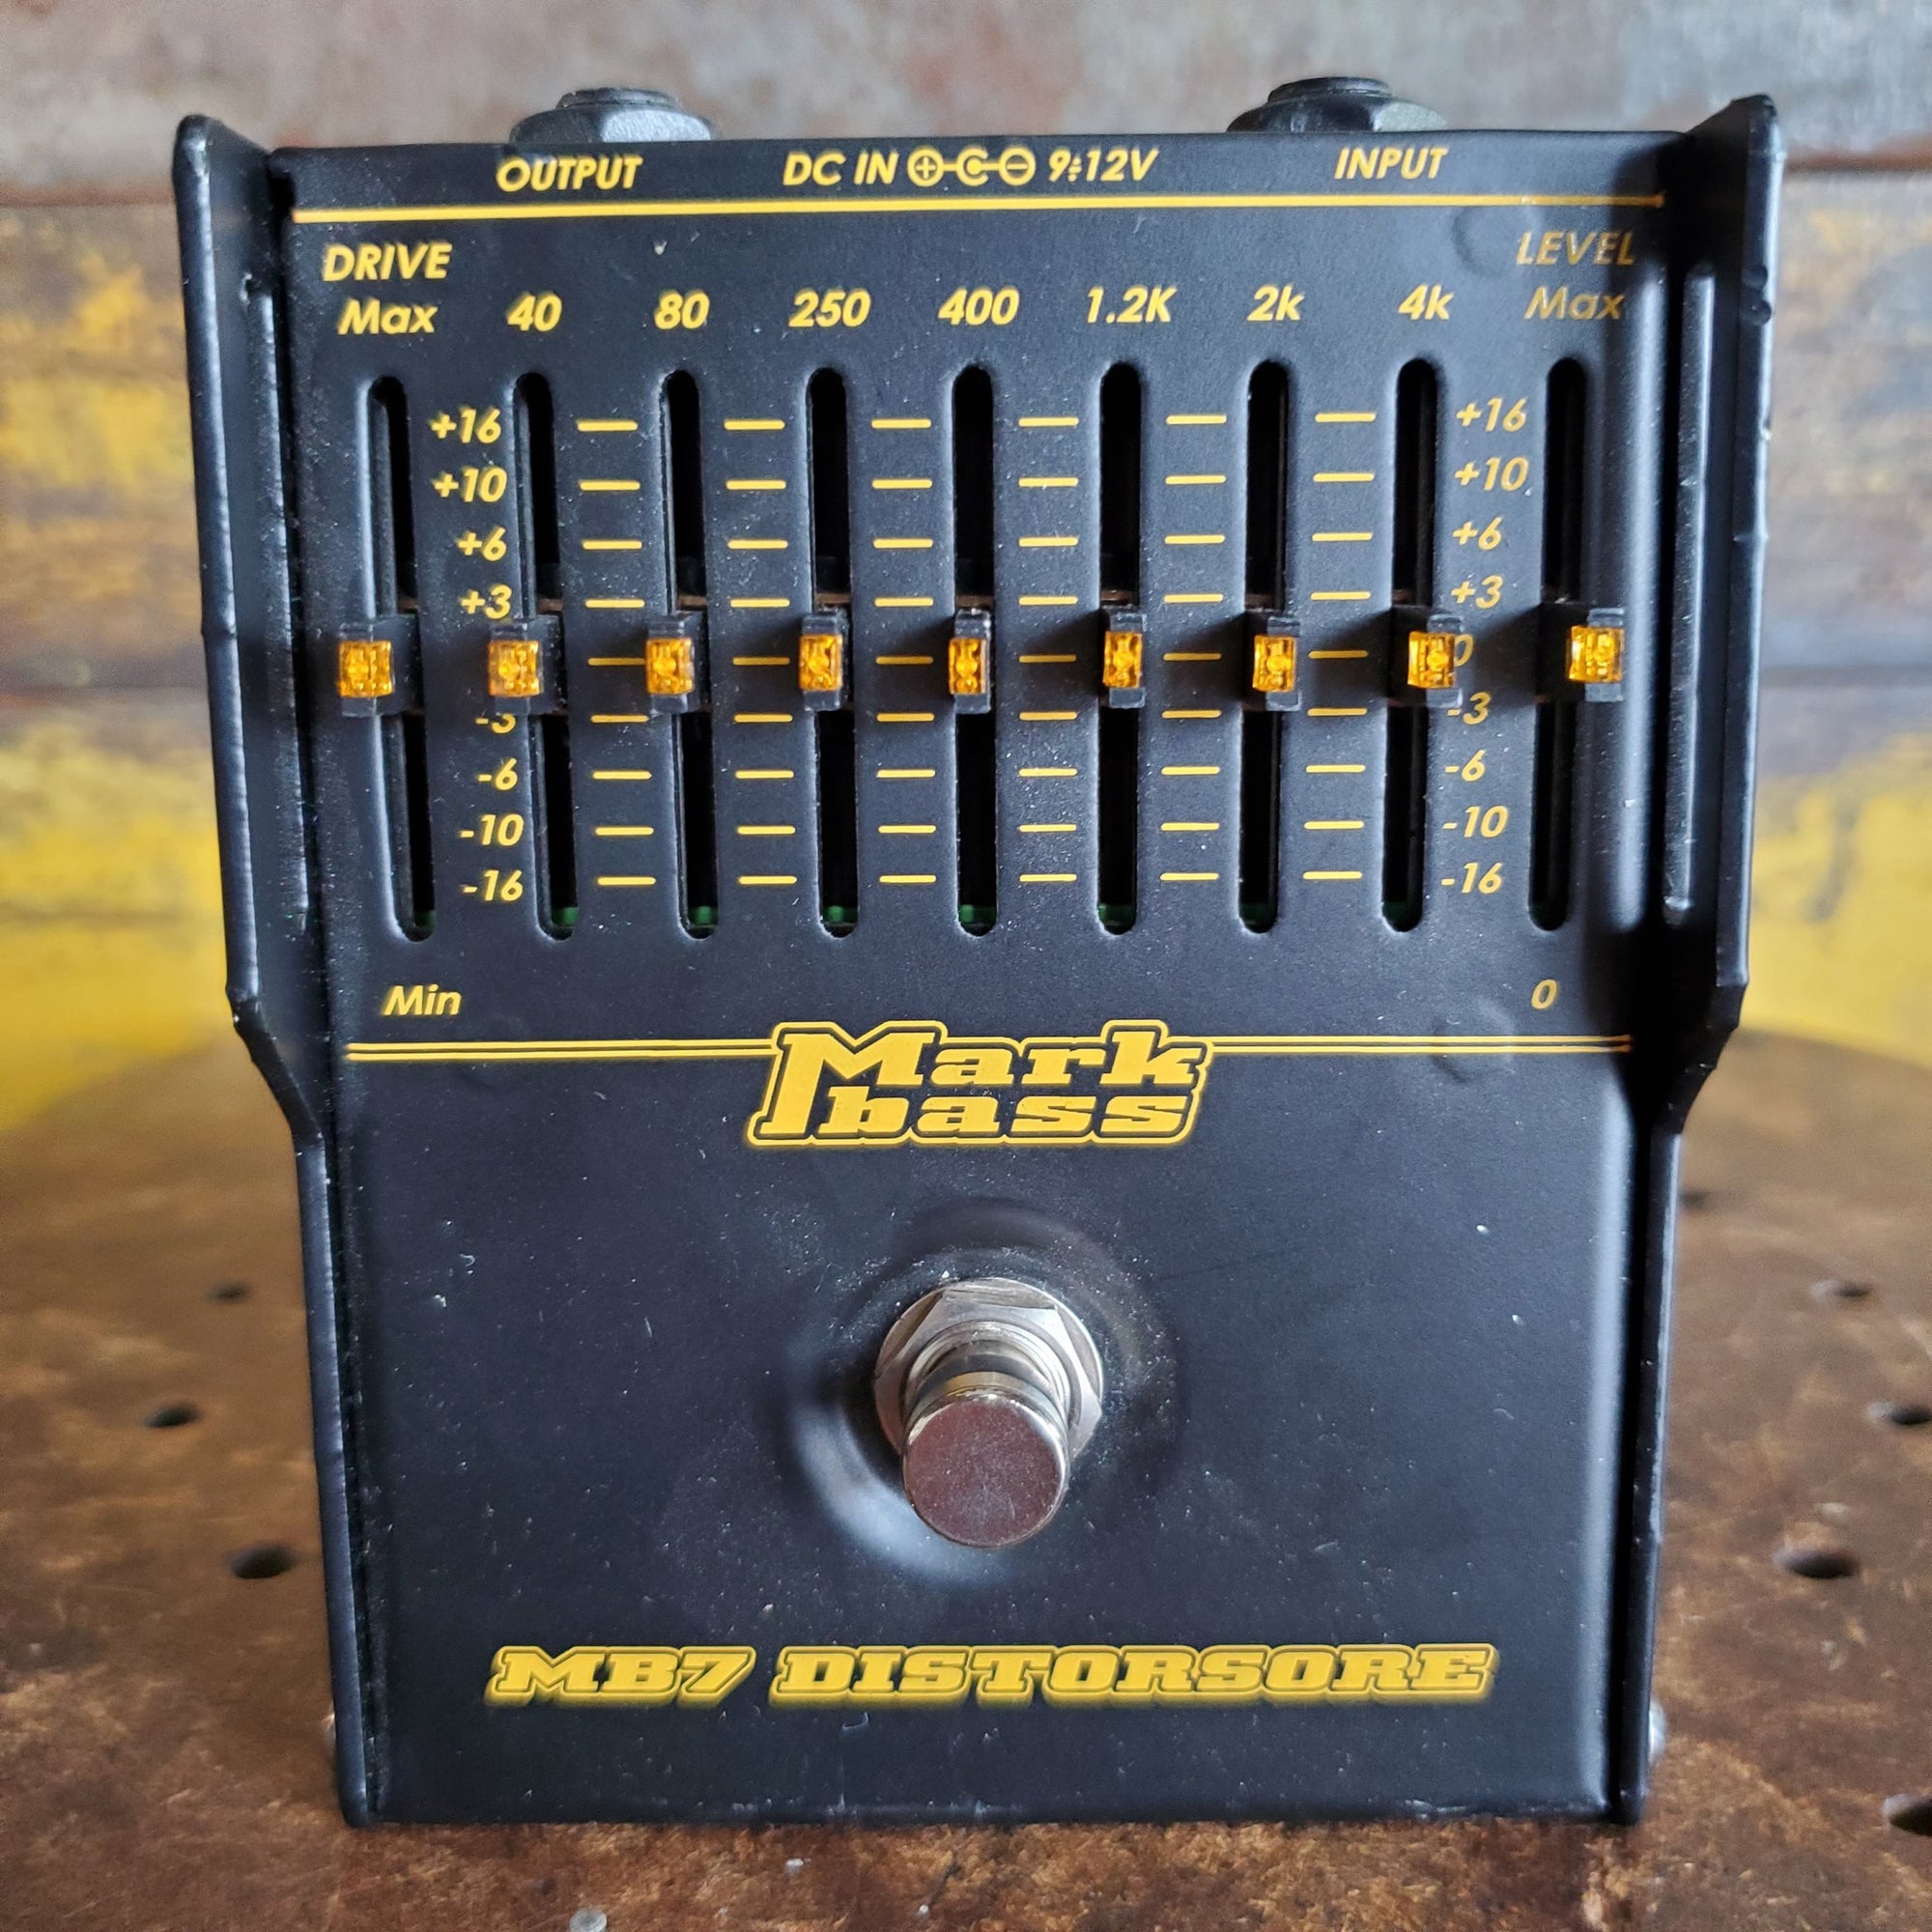 Mark Bass MB7 Distorsore